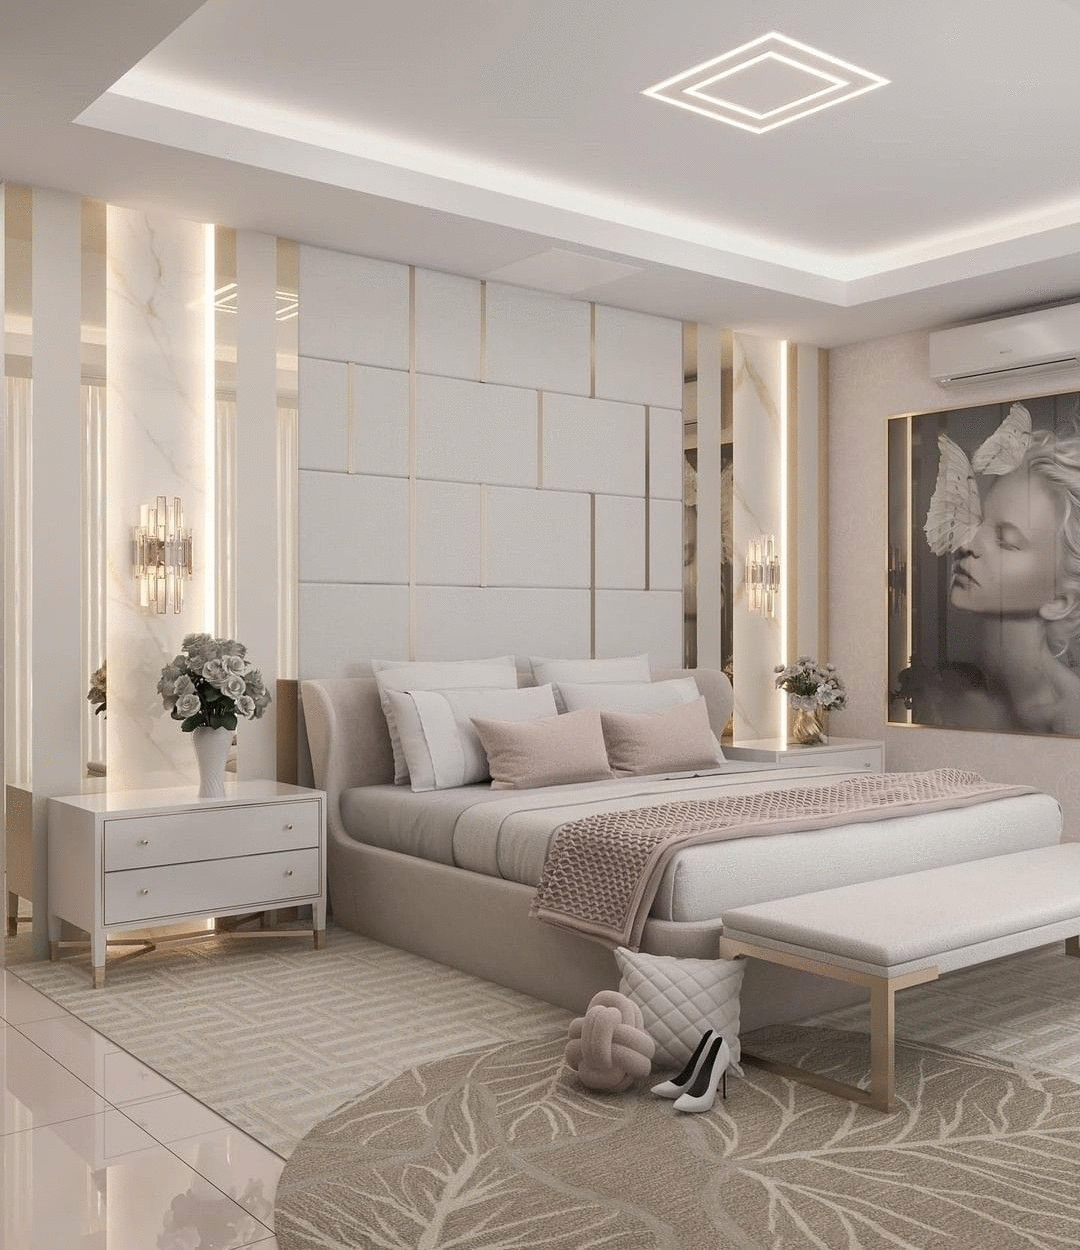 Inspiring 15 White Bedroom Design Ideas - Decor 15